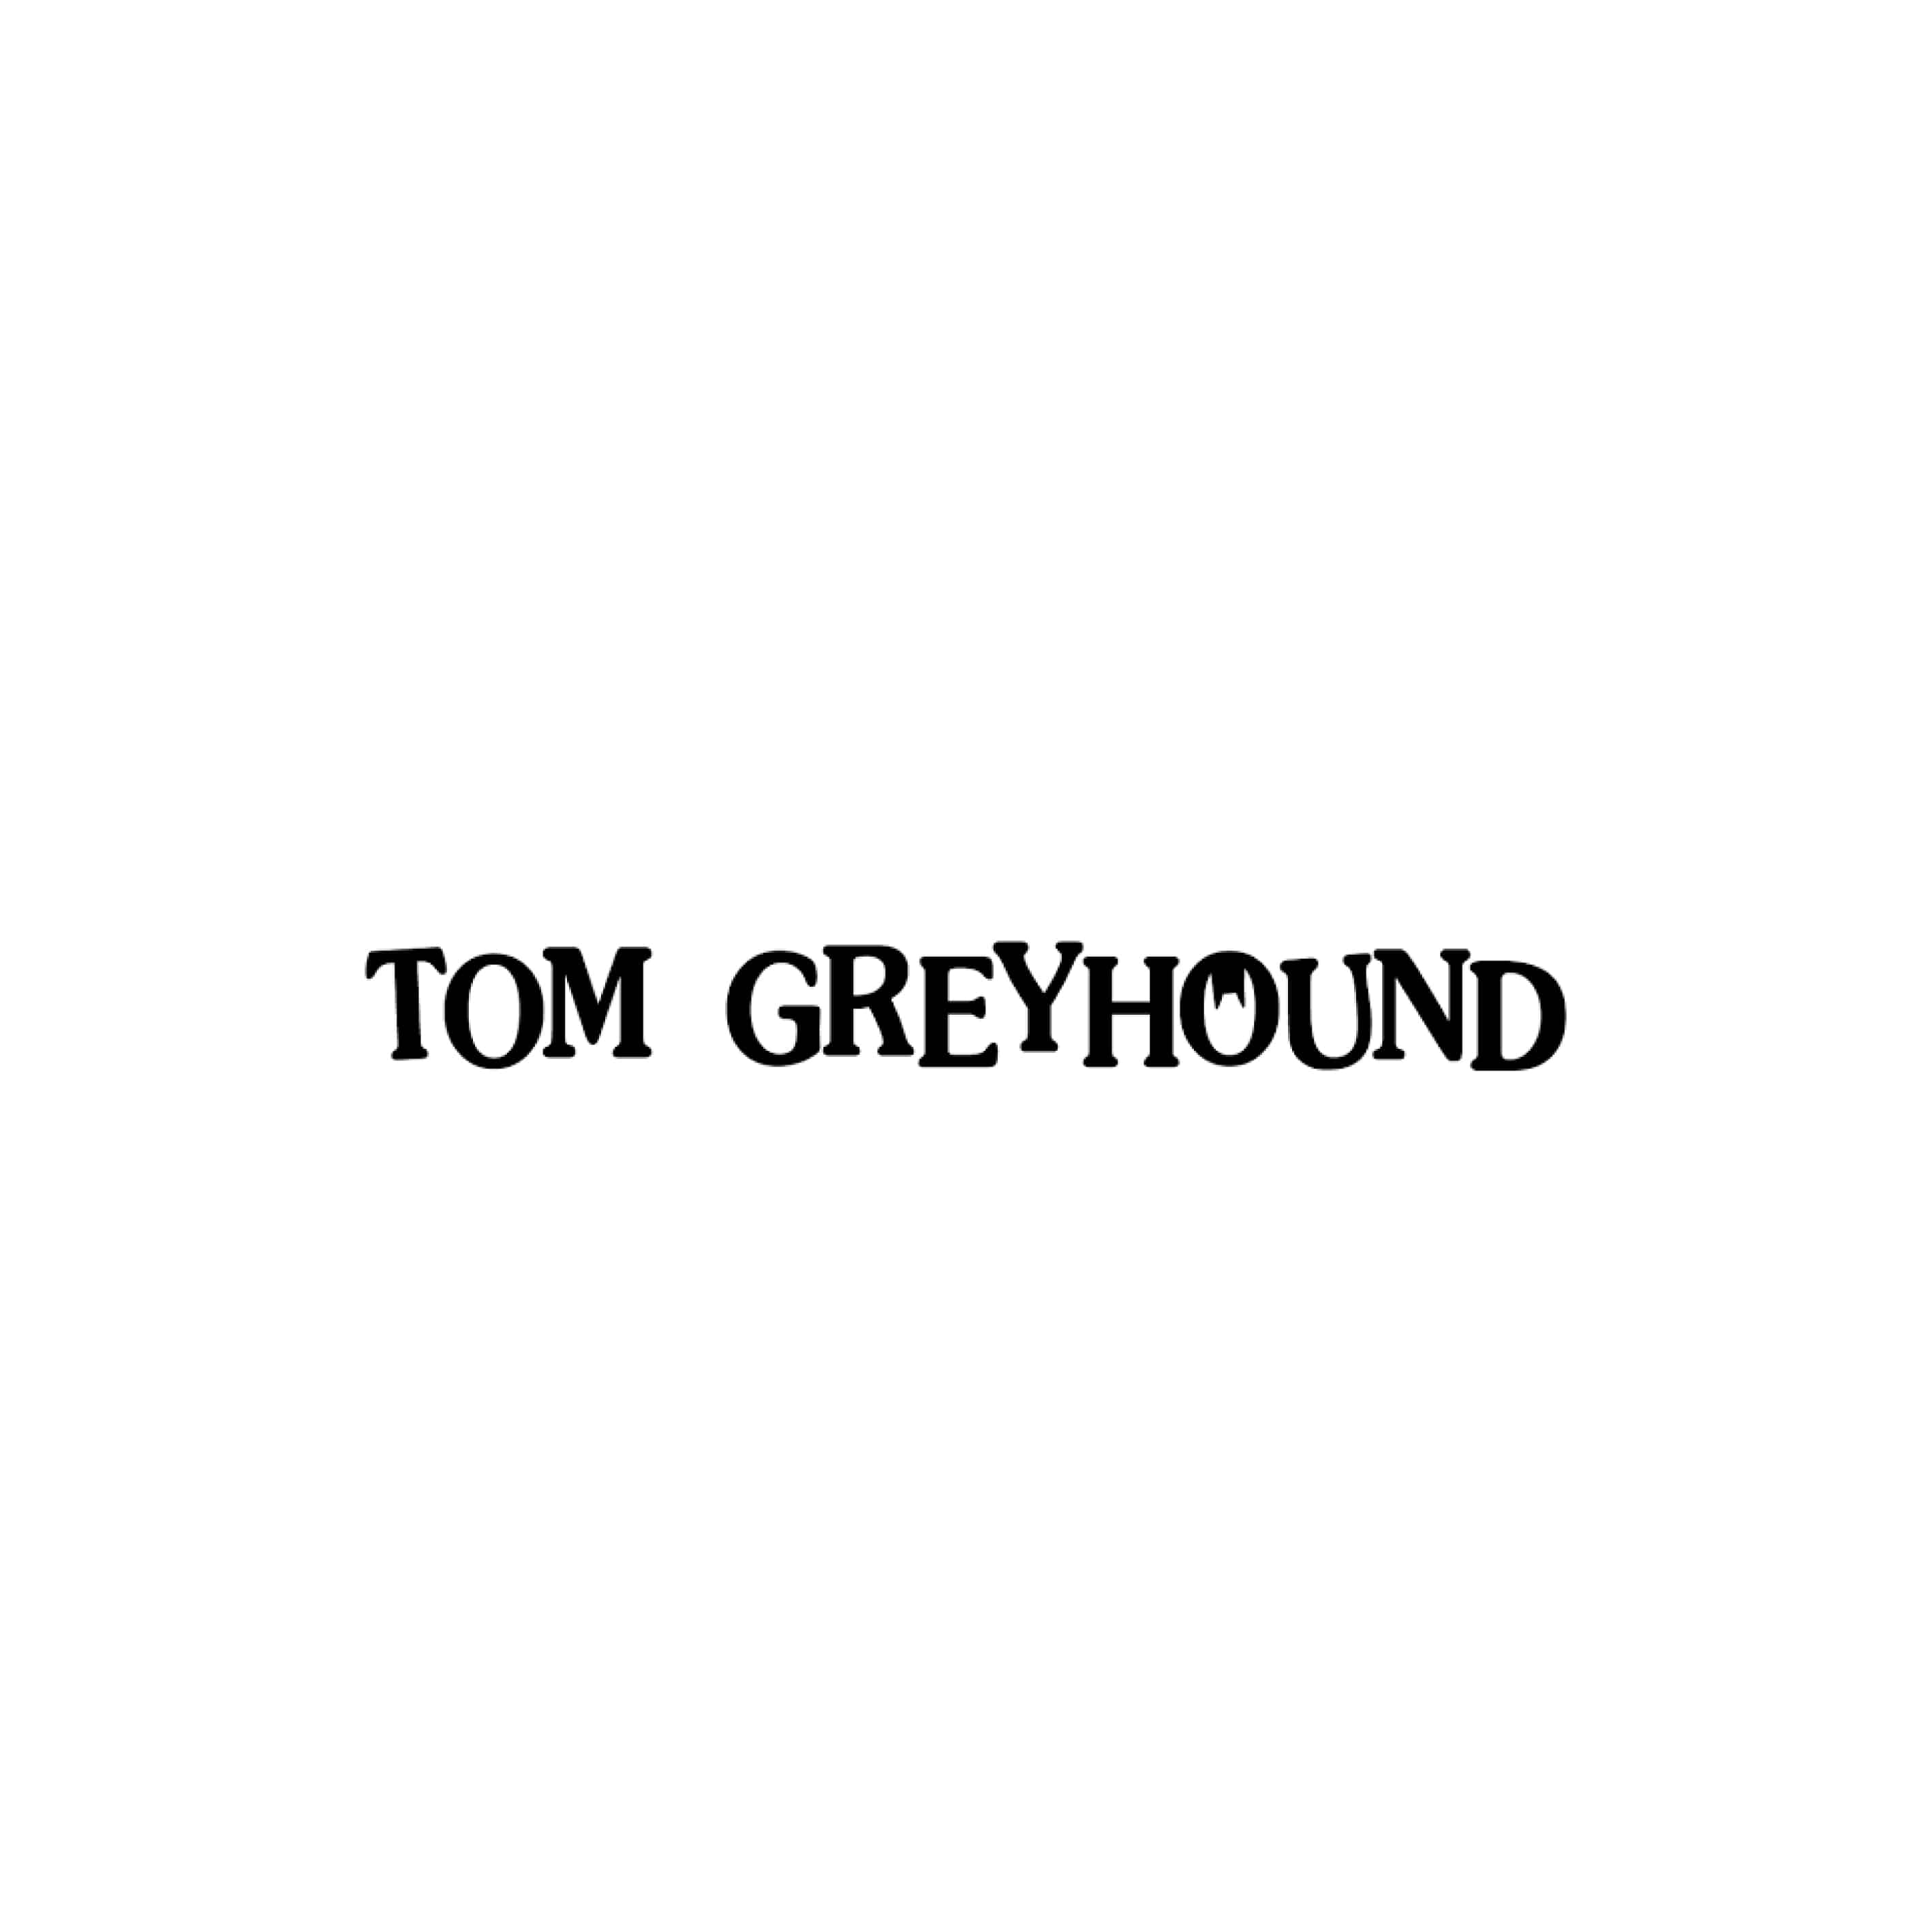 TOM GREYHOUND